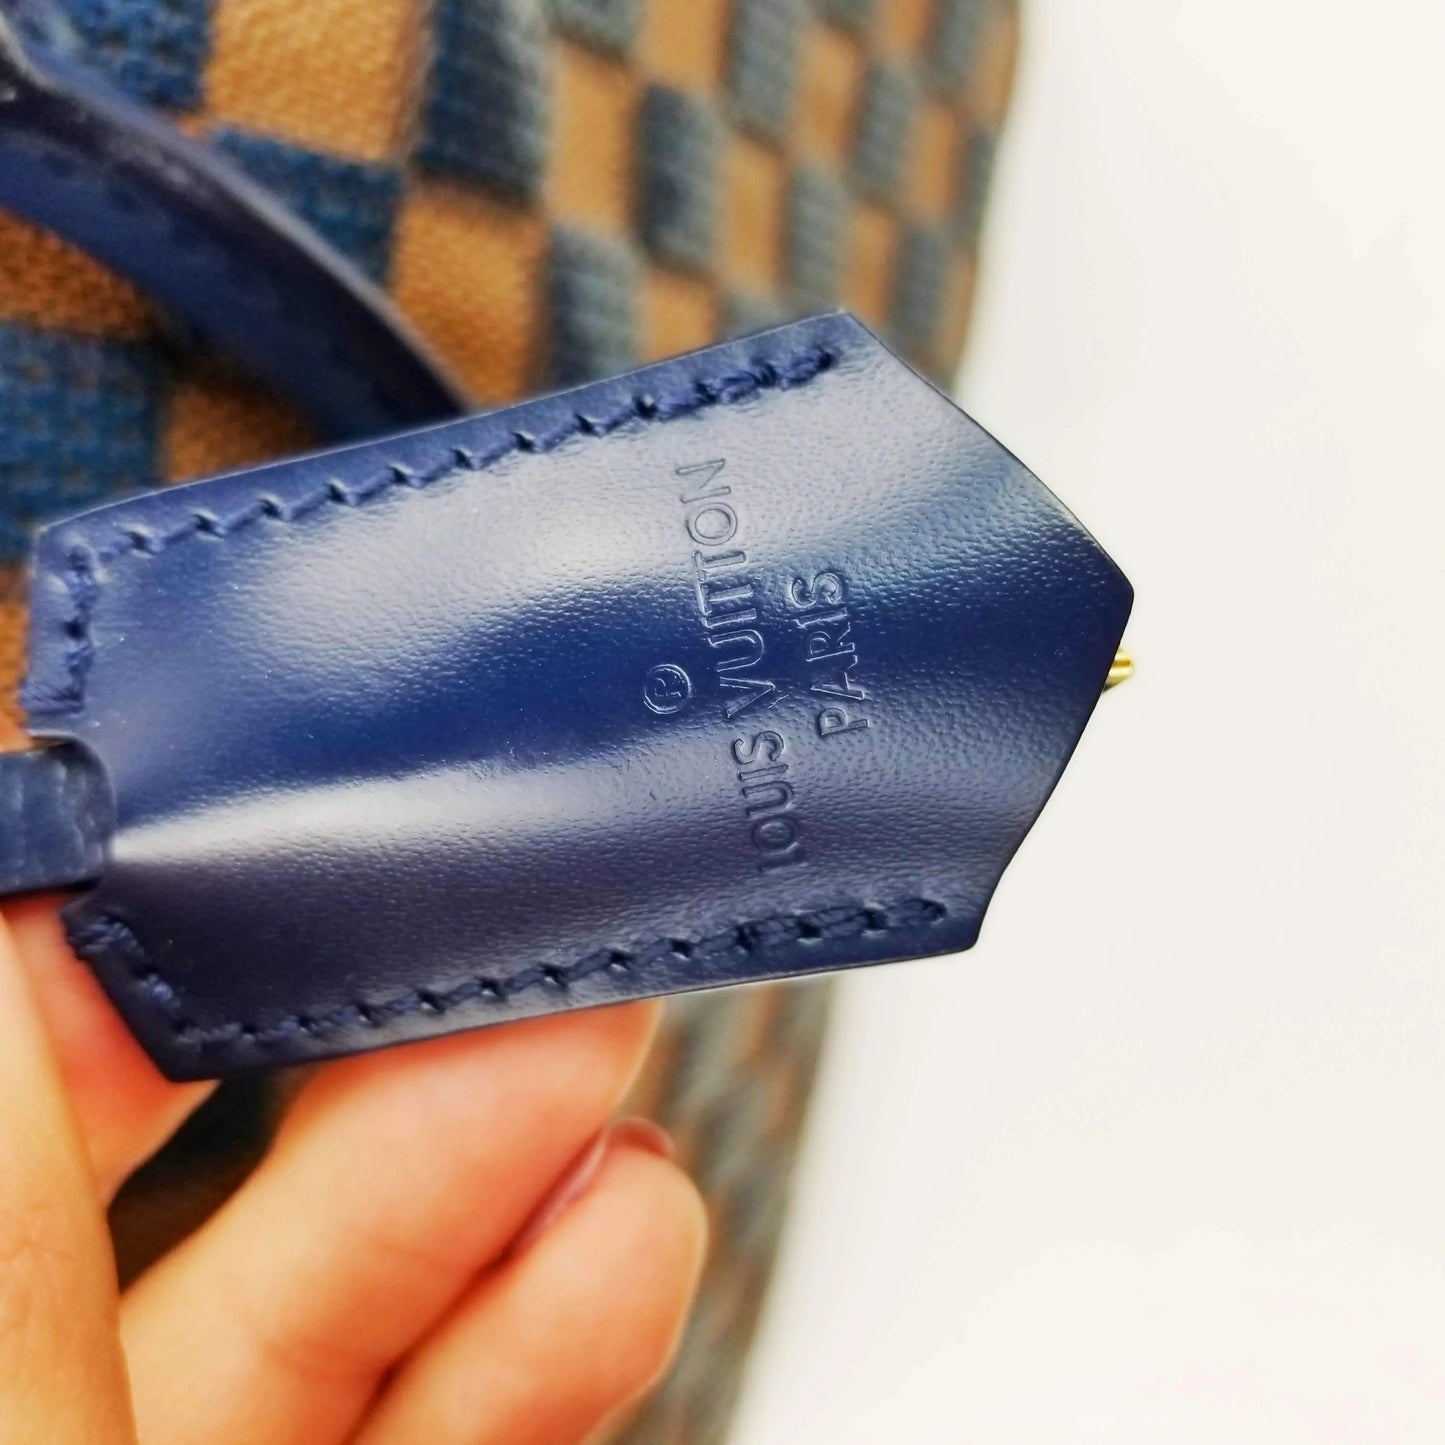 LOT:246  LOUIS VUITTON - a limited edition Damier Paillettes Sequin Speedy  30 handbag.